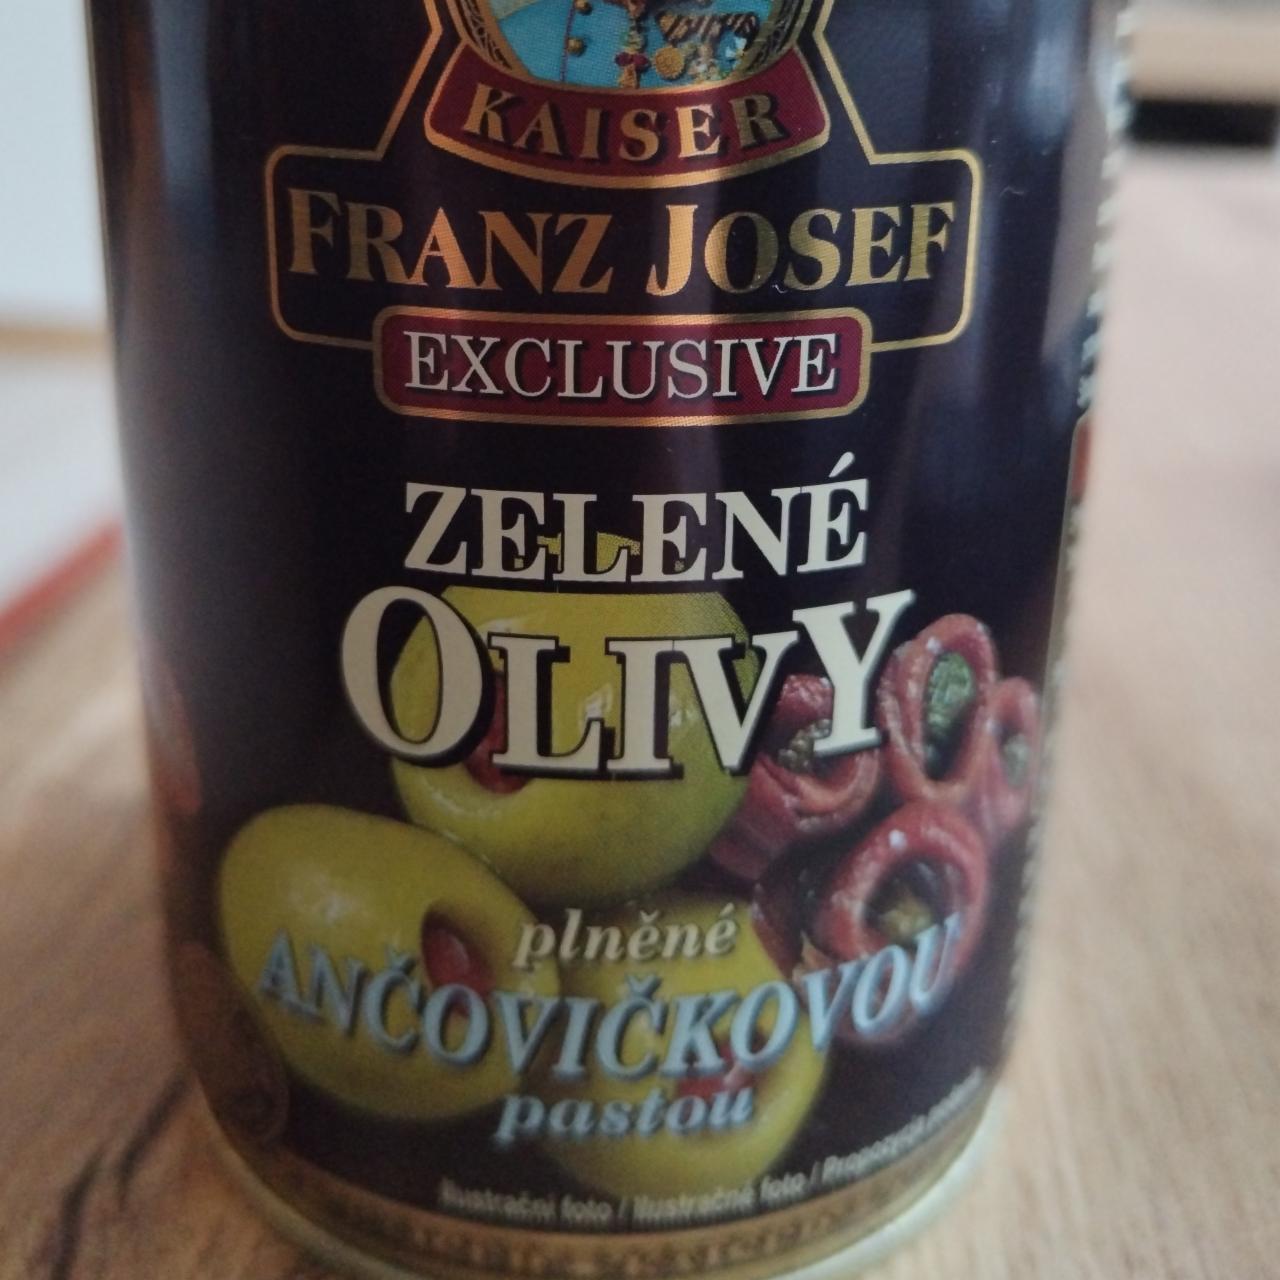 Fotografie - Zelené olivy plněné ančovičkovou pastou Kaiser Franz Josef exclusive